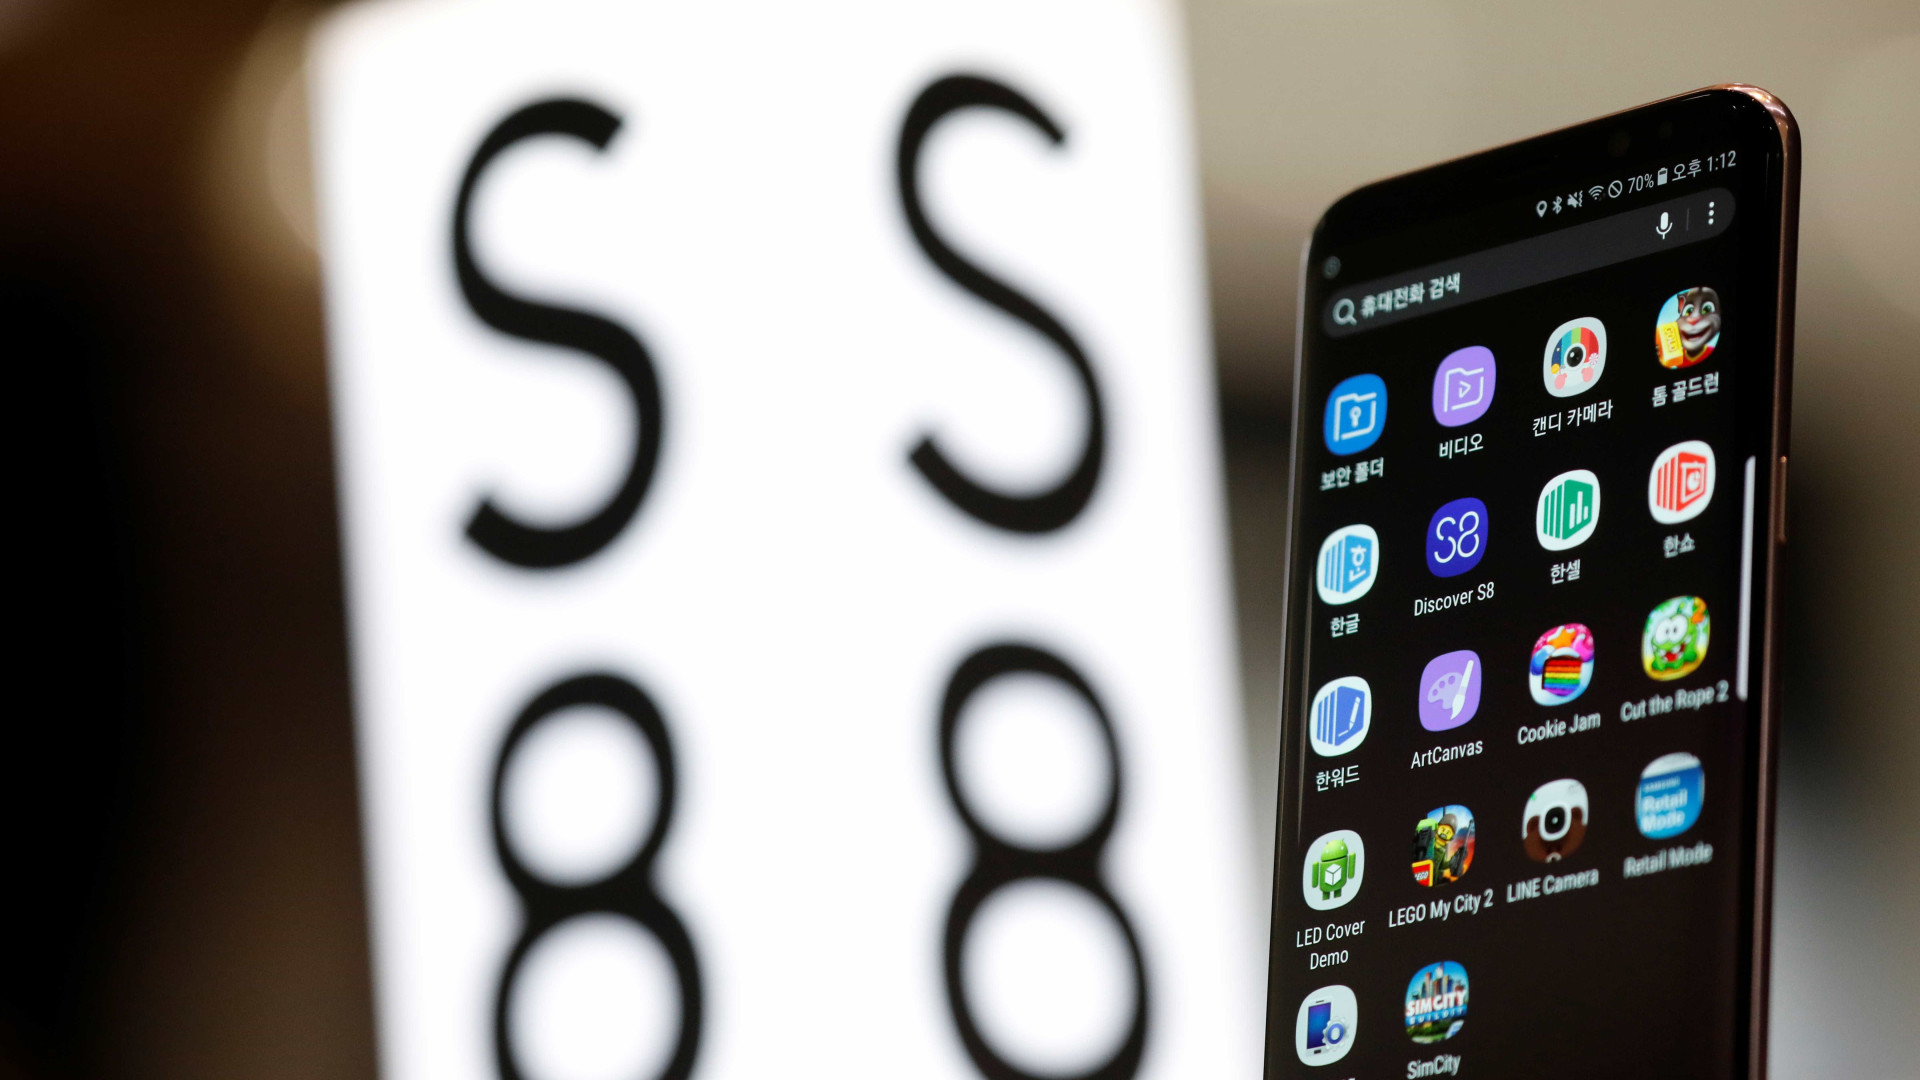 Samsung libera versão beta do sistema operacional do Android Oreo